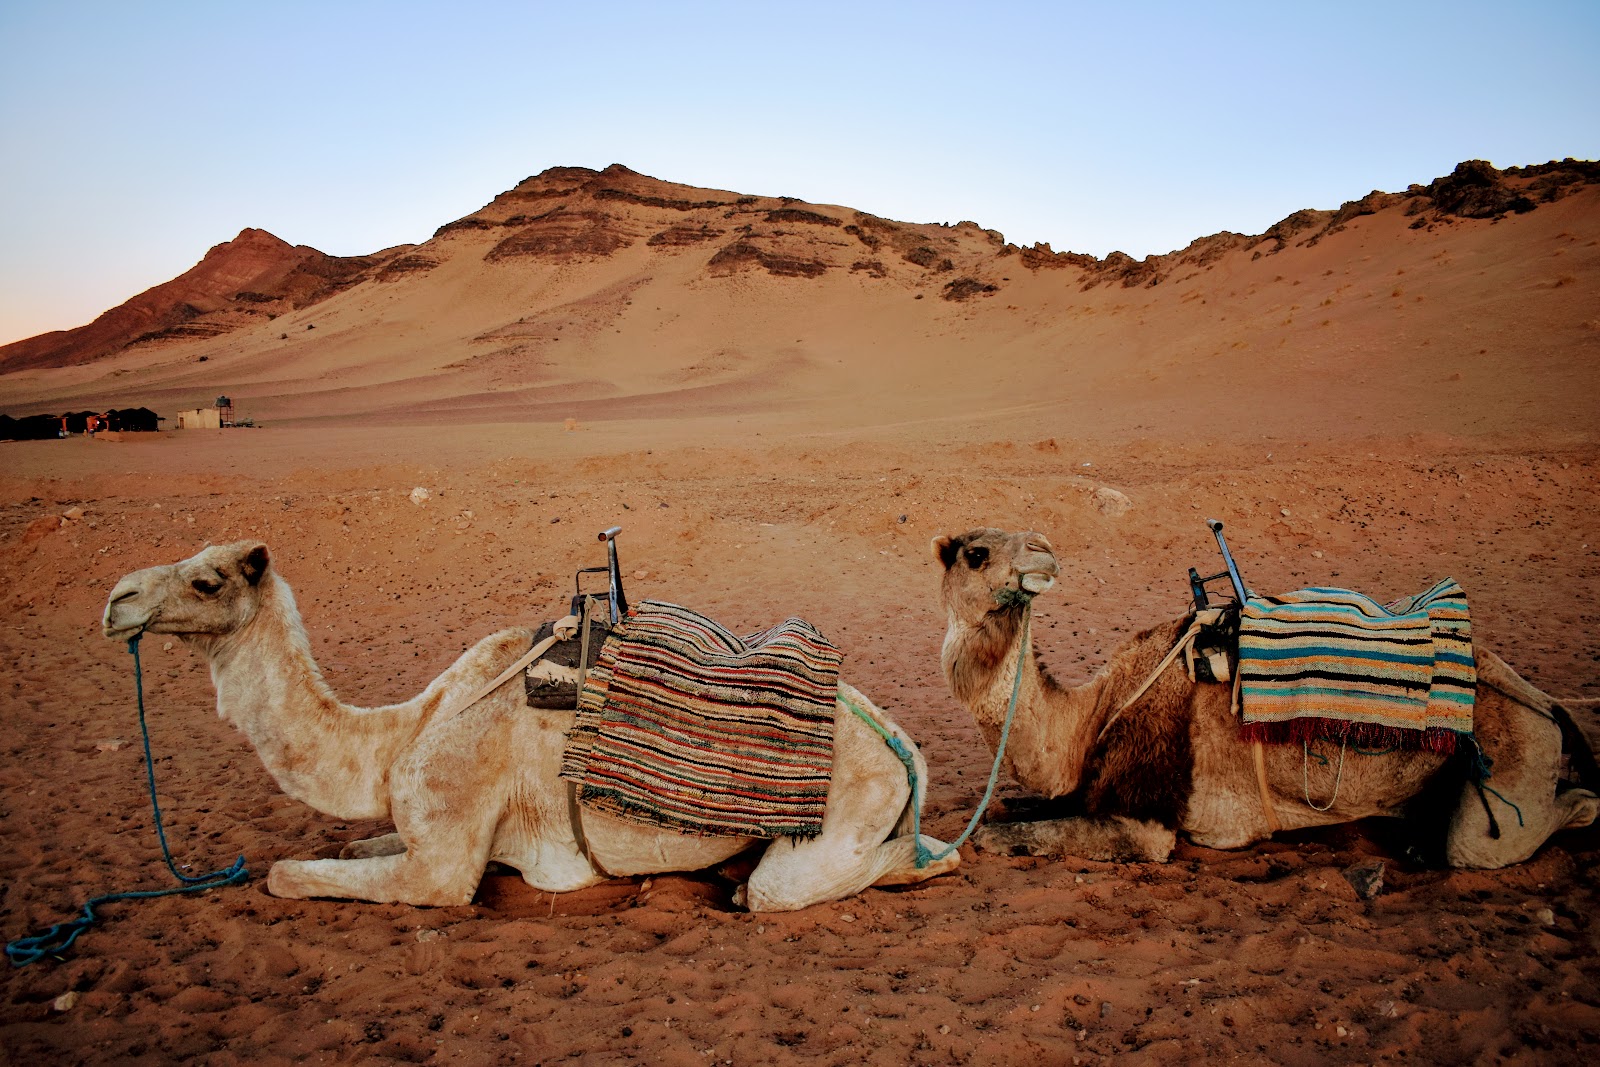 Camellos recostados en el desierto de Marruecos - foto de Condensed Earth